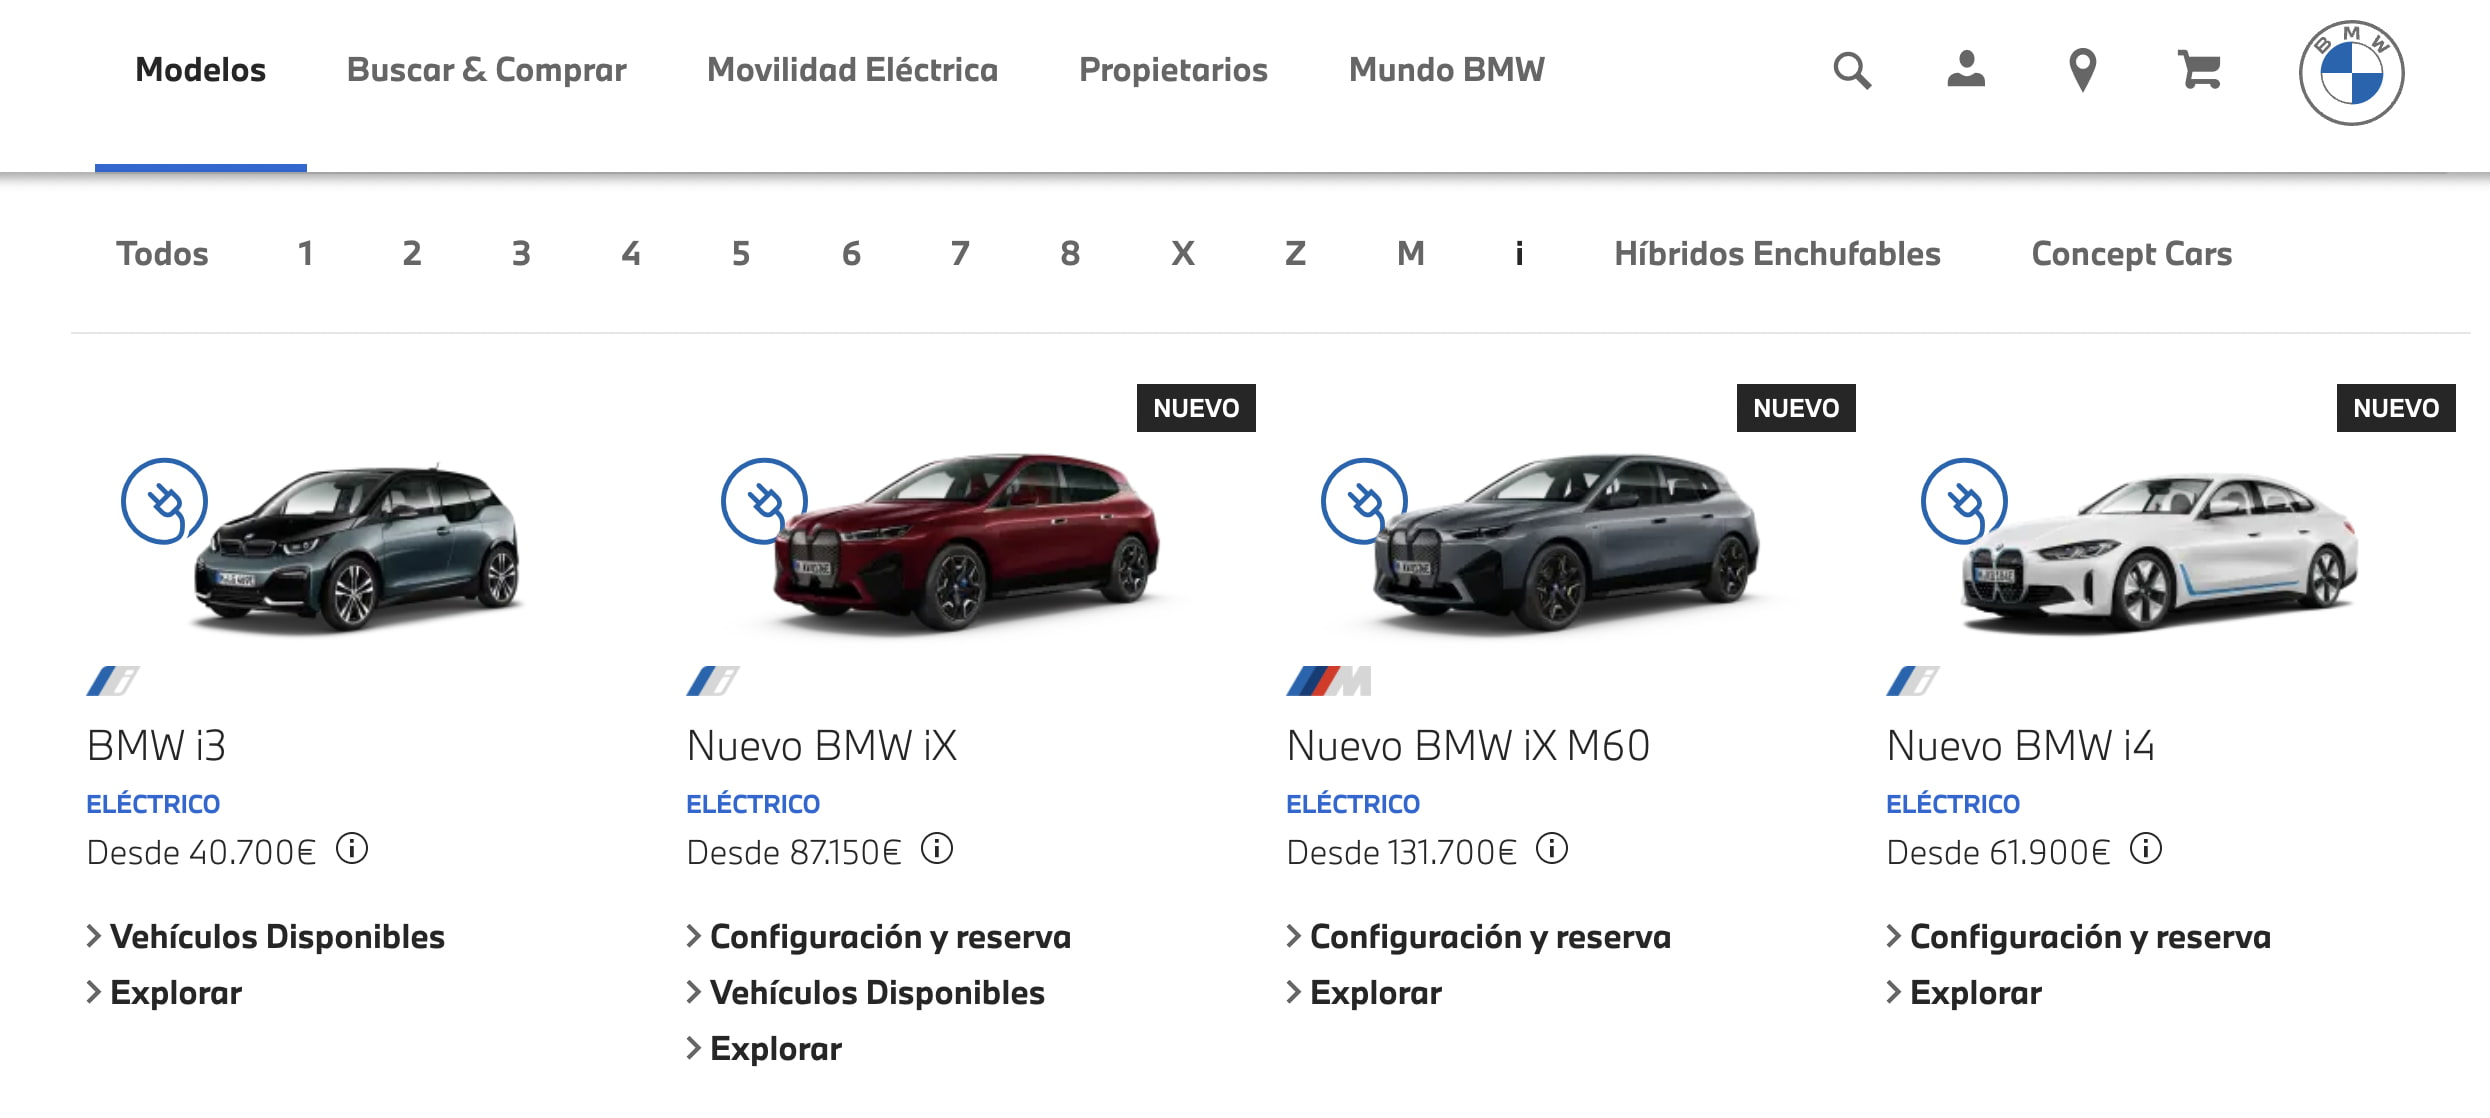 Ejemplo de estrategia de descremado de precios: BMW